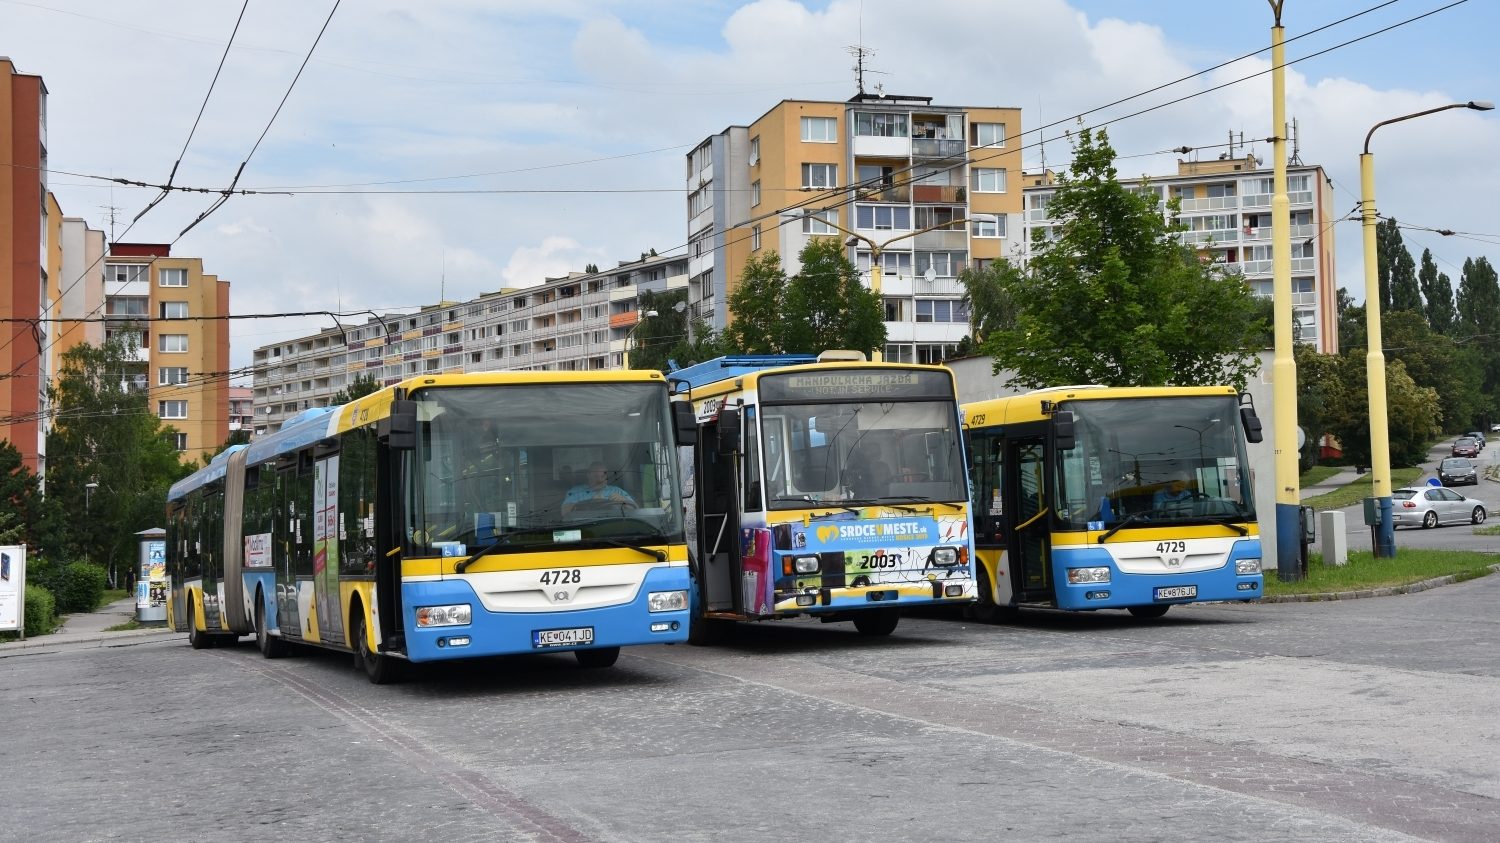 Autobusy SOR NB 18 CITY ev. č. 4728 a 4729 z roku 2013 (zařazeny v r. 2014) ve společnosti trolejbusu Škoda 14 TrM ev. č. 2003 na konečné Lingov v roce 2019. (foto: Libor Hinčica)